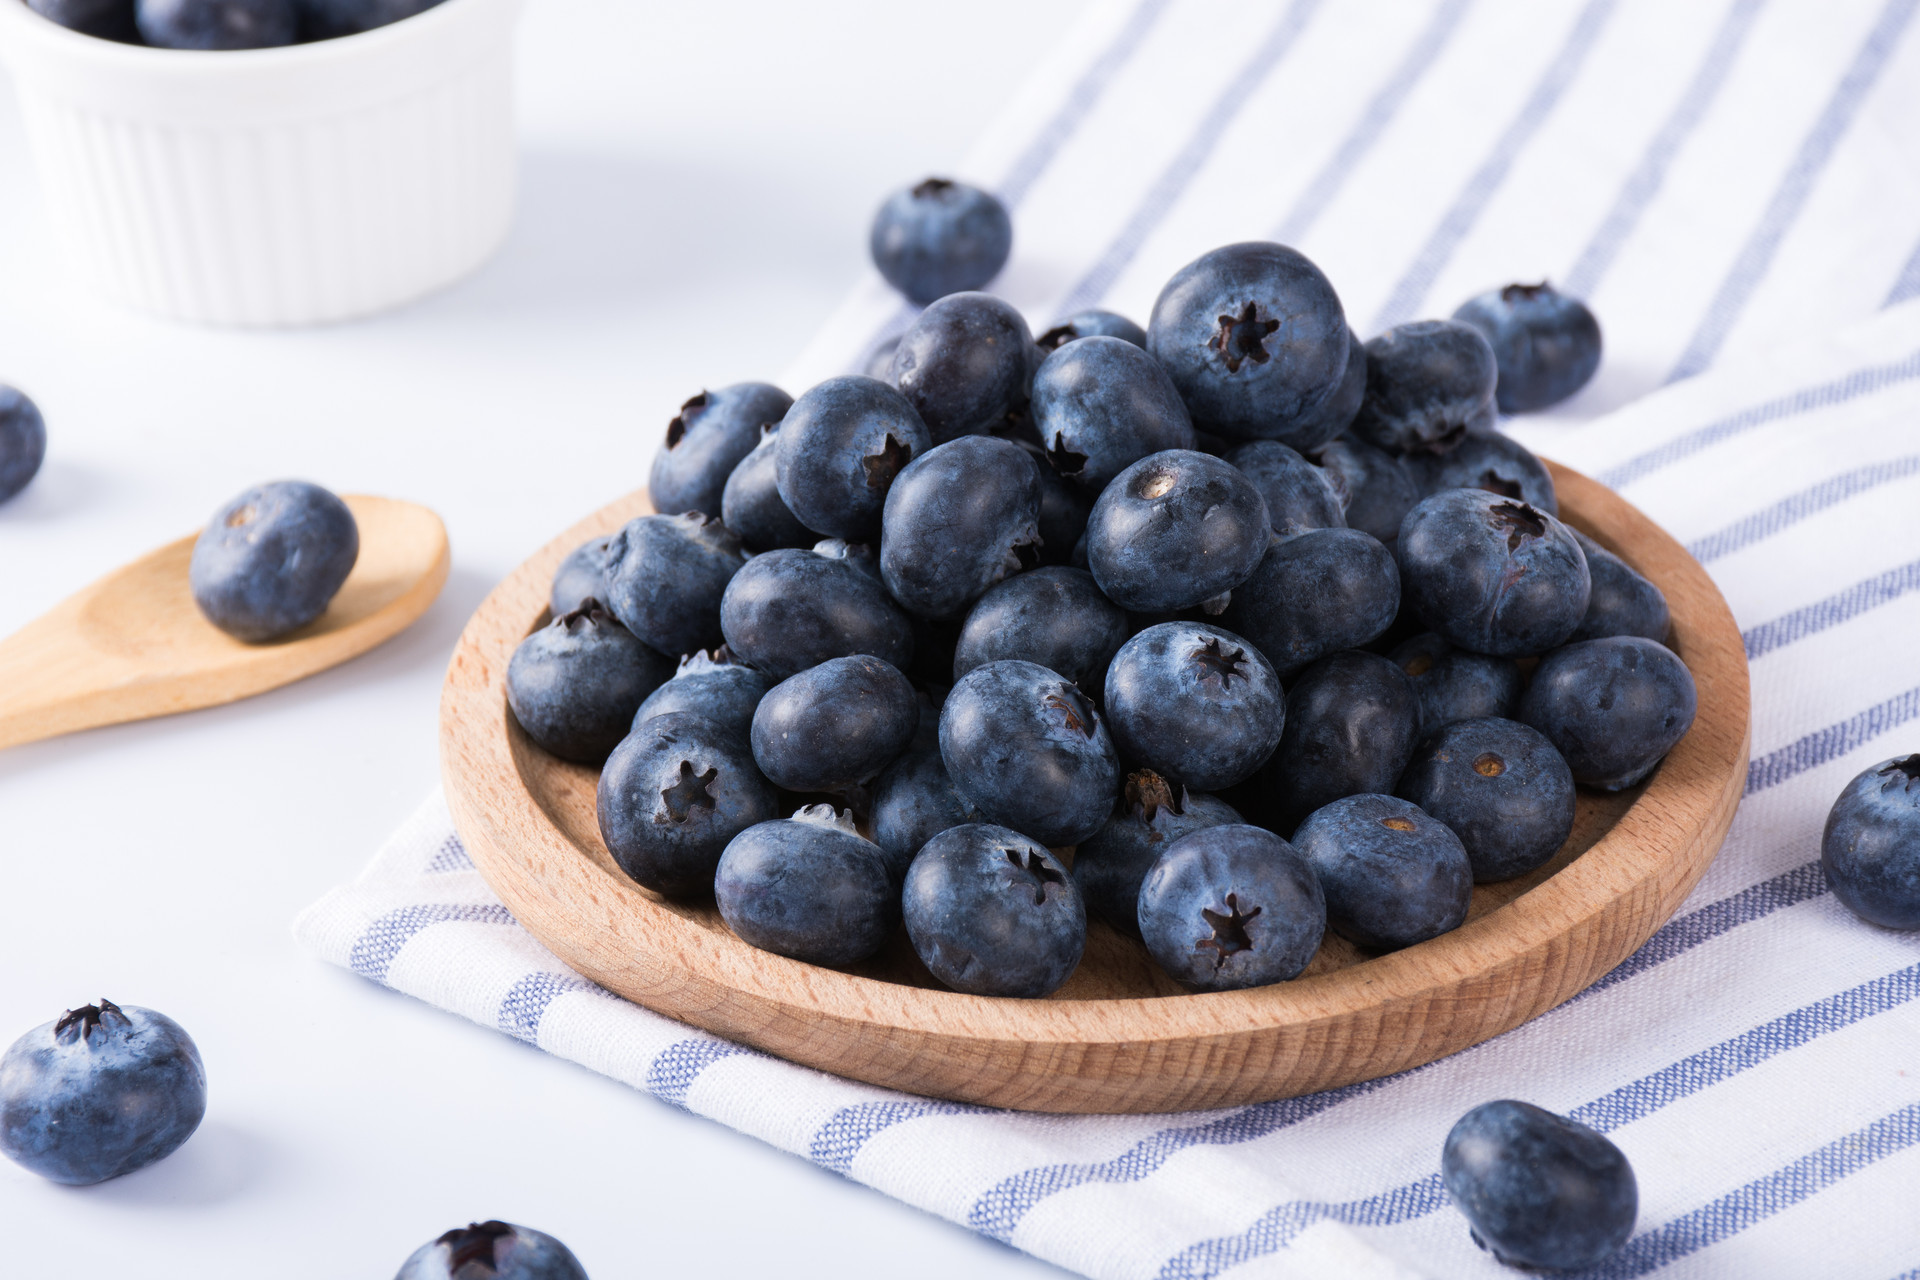 分享新品种和栽培管理新技术 为青岛蓝莓产业把脉定向